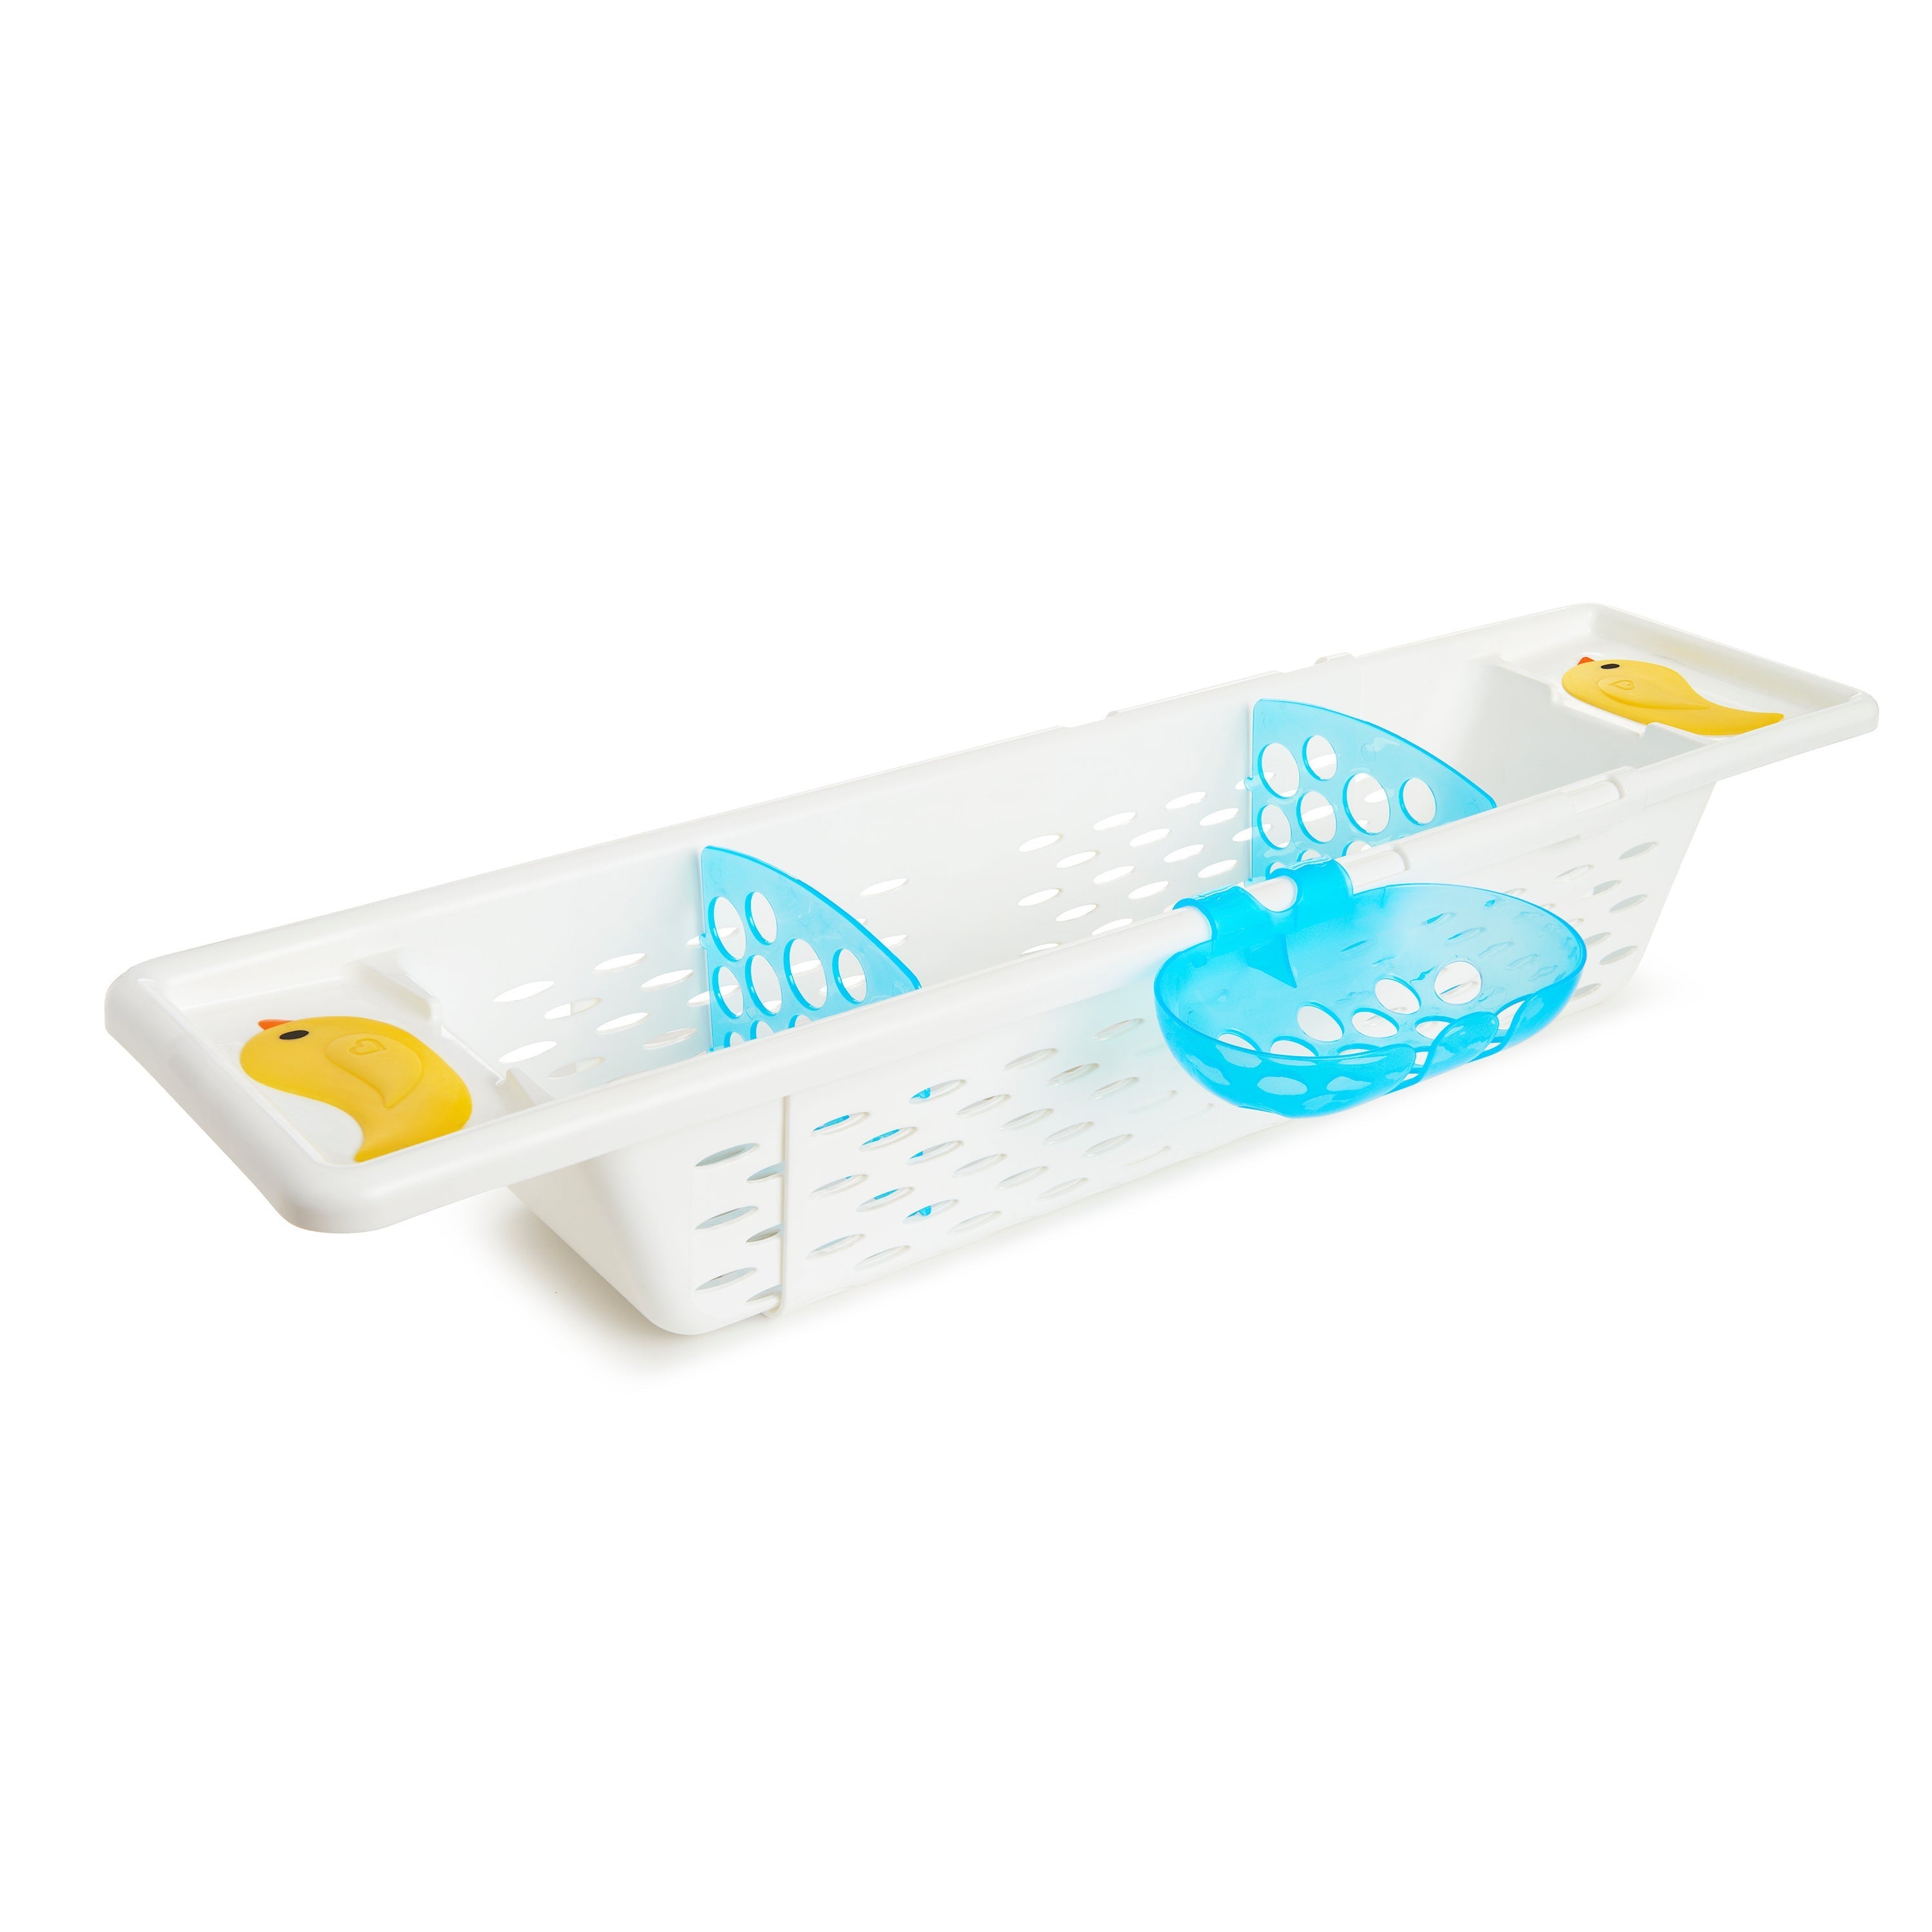 Munchkin Extra Grip Baby Toy Bath Storage Caddy bath essentials Kids safe